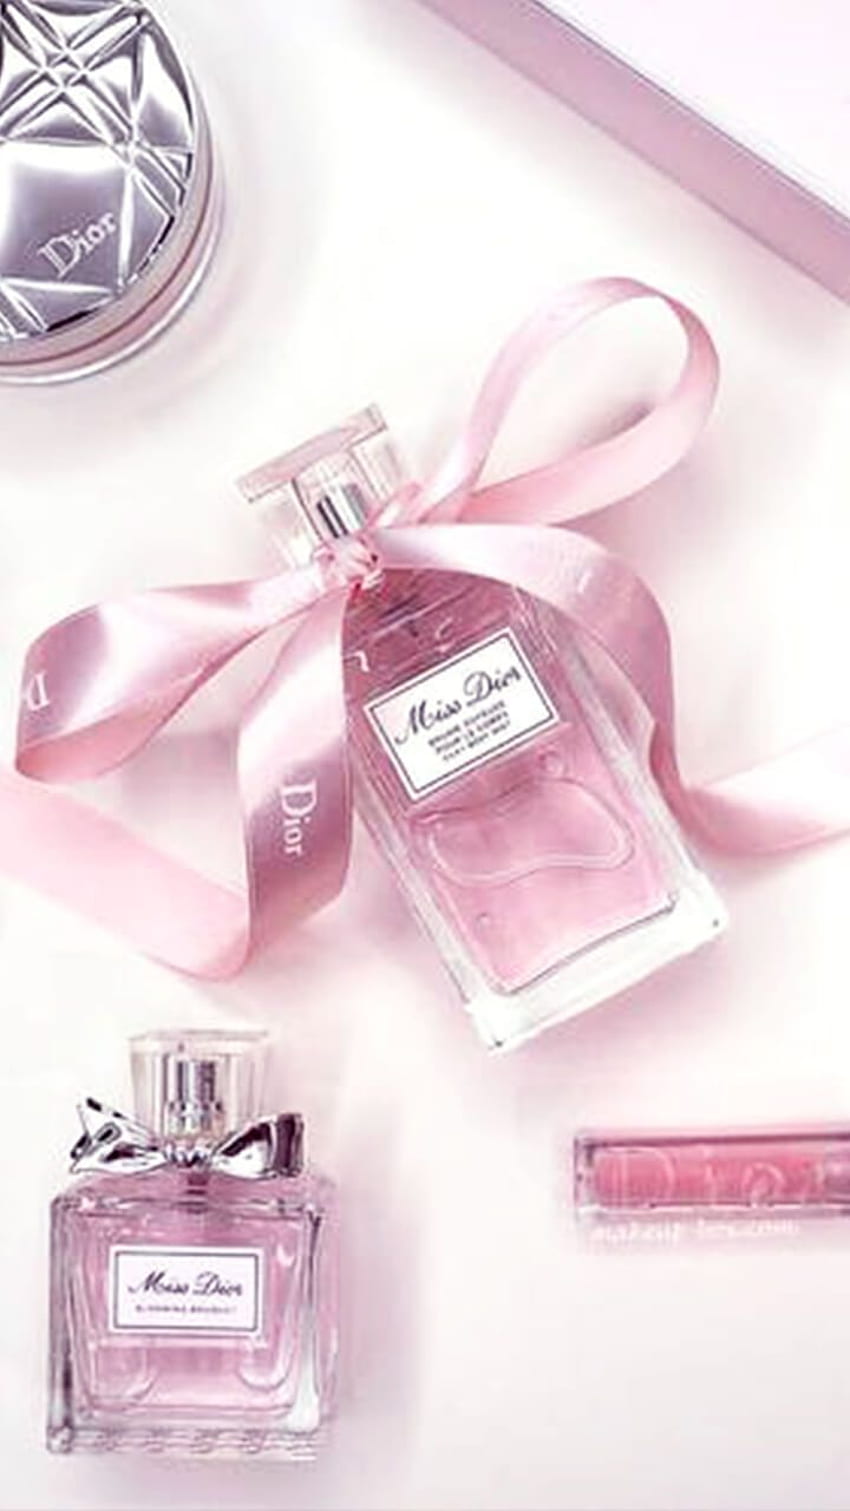 Tara Anastasia ♥ on Parfums campagne pub. Perfume ad, Miss dior ...